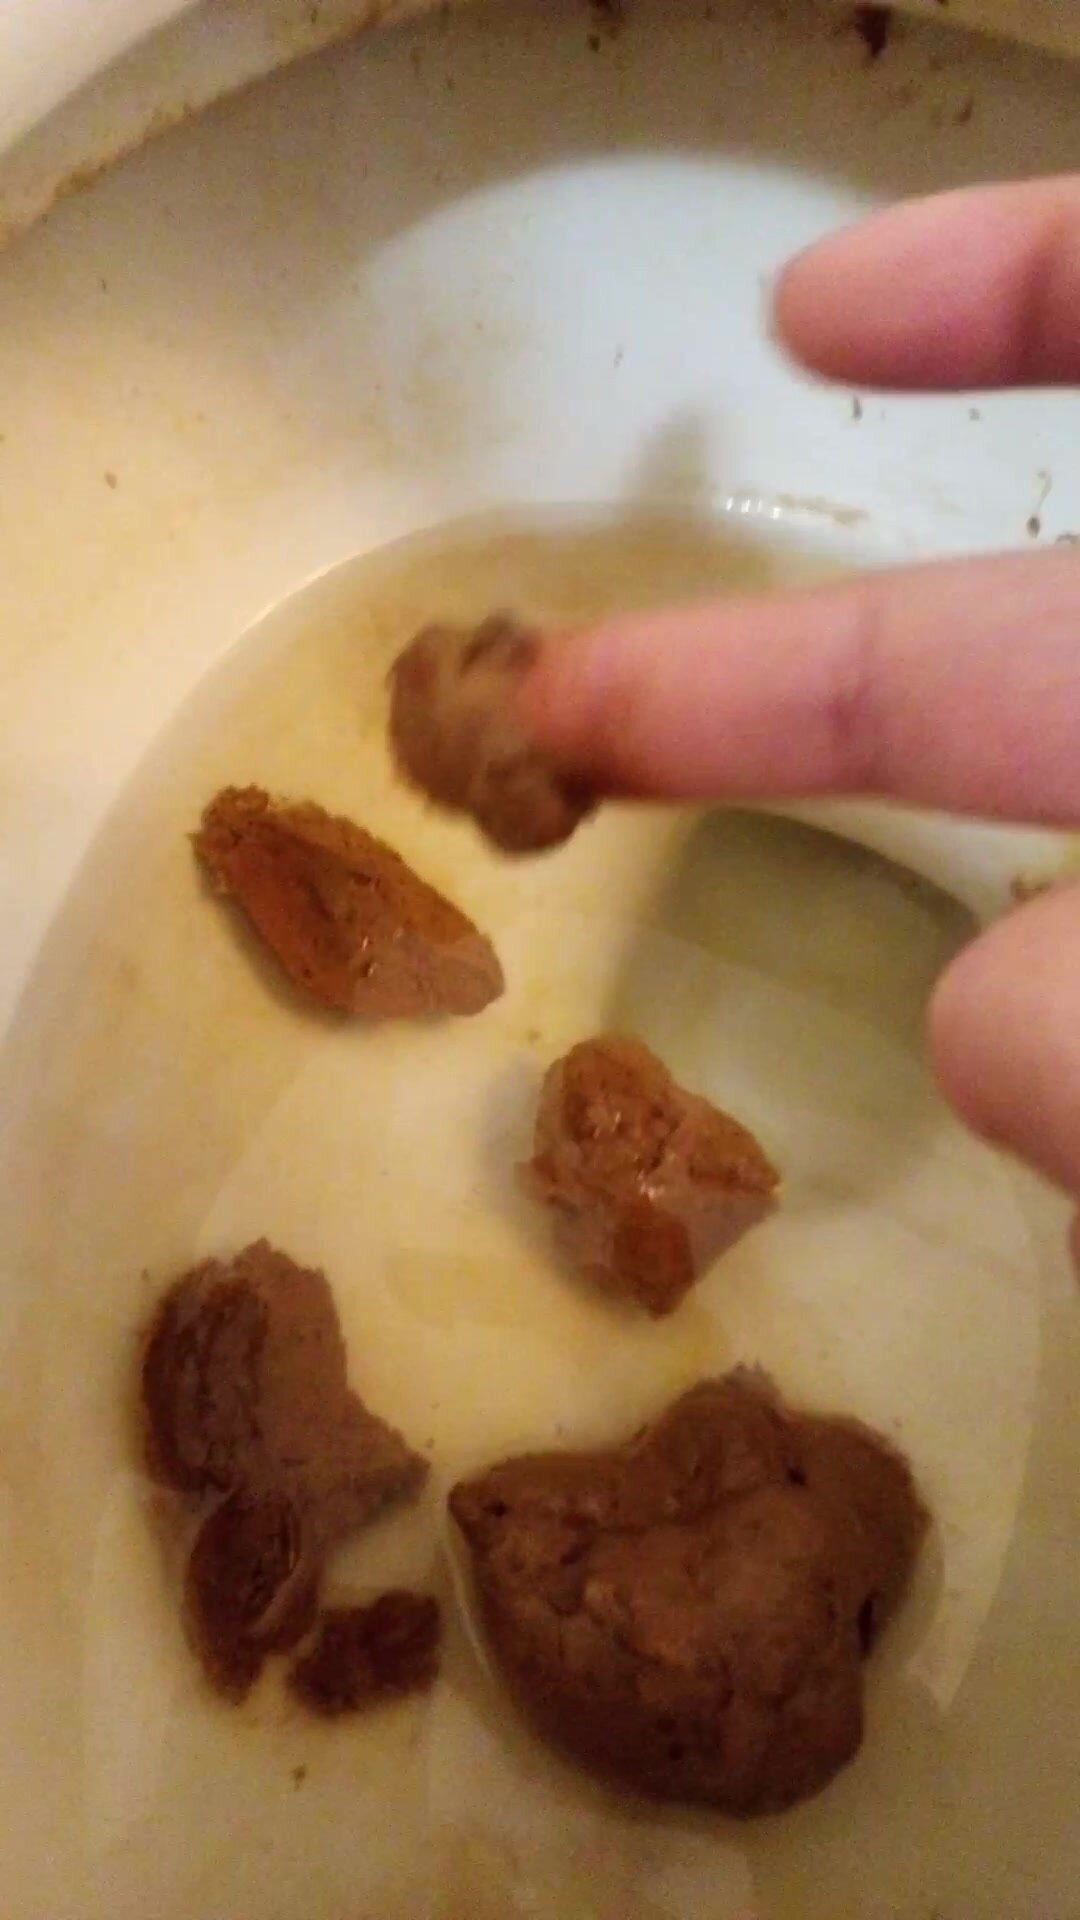 Poop on finger poop on floor poop in toilet